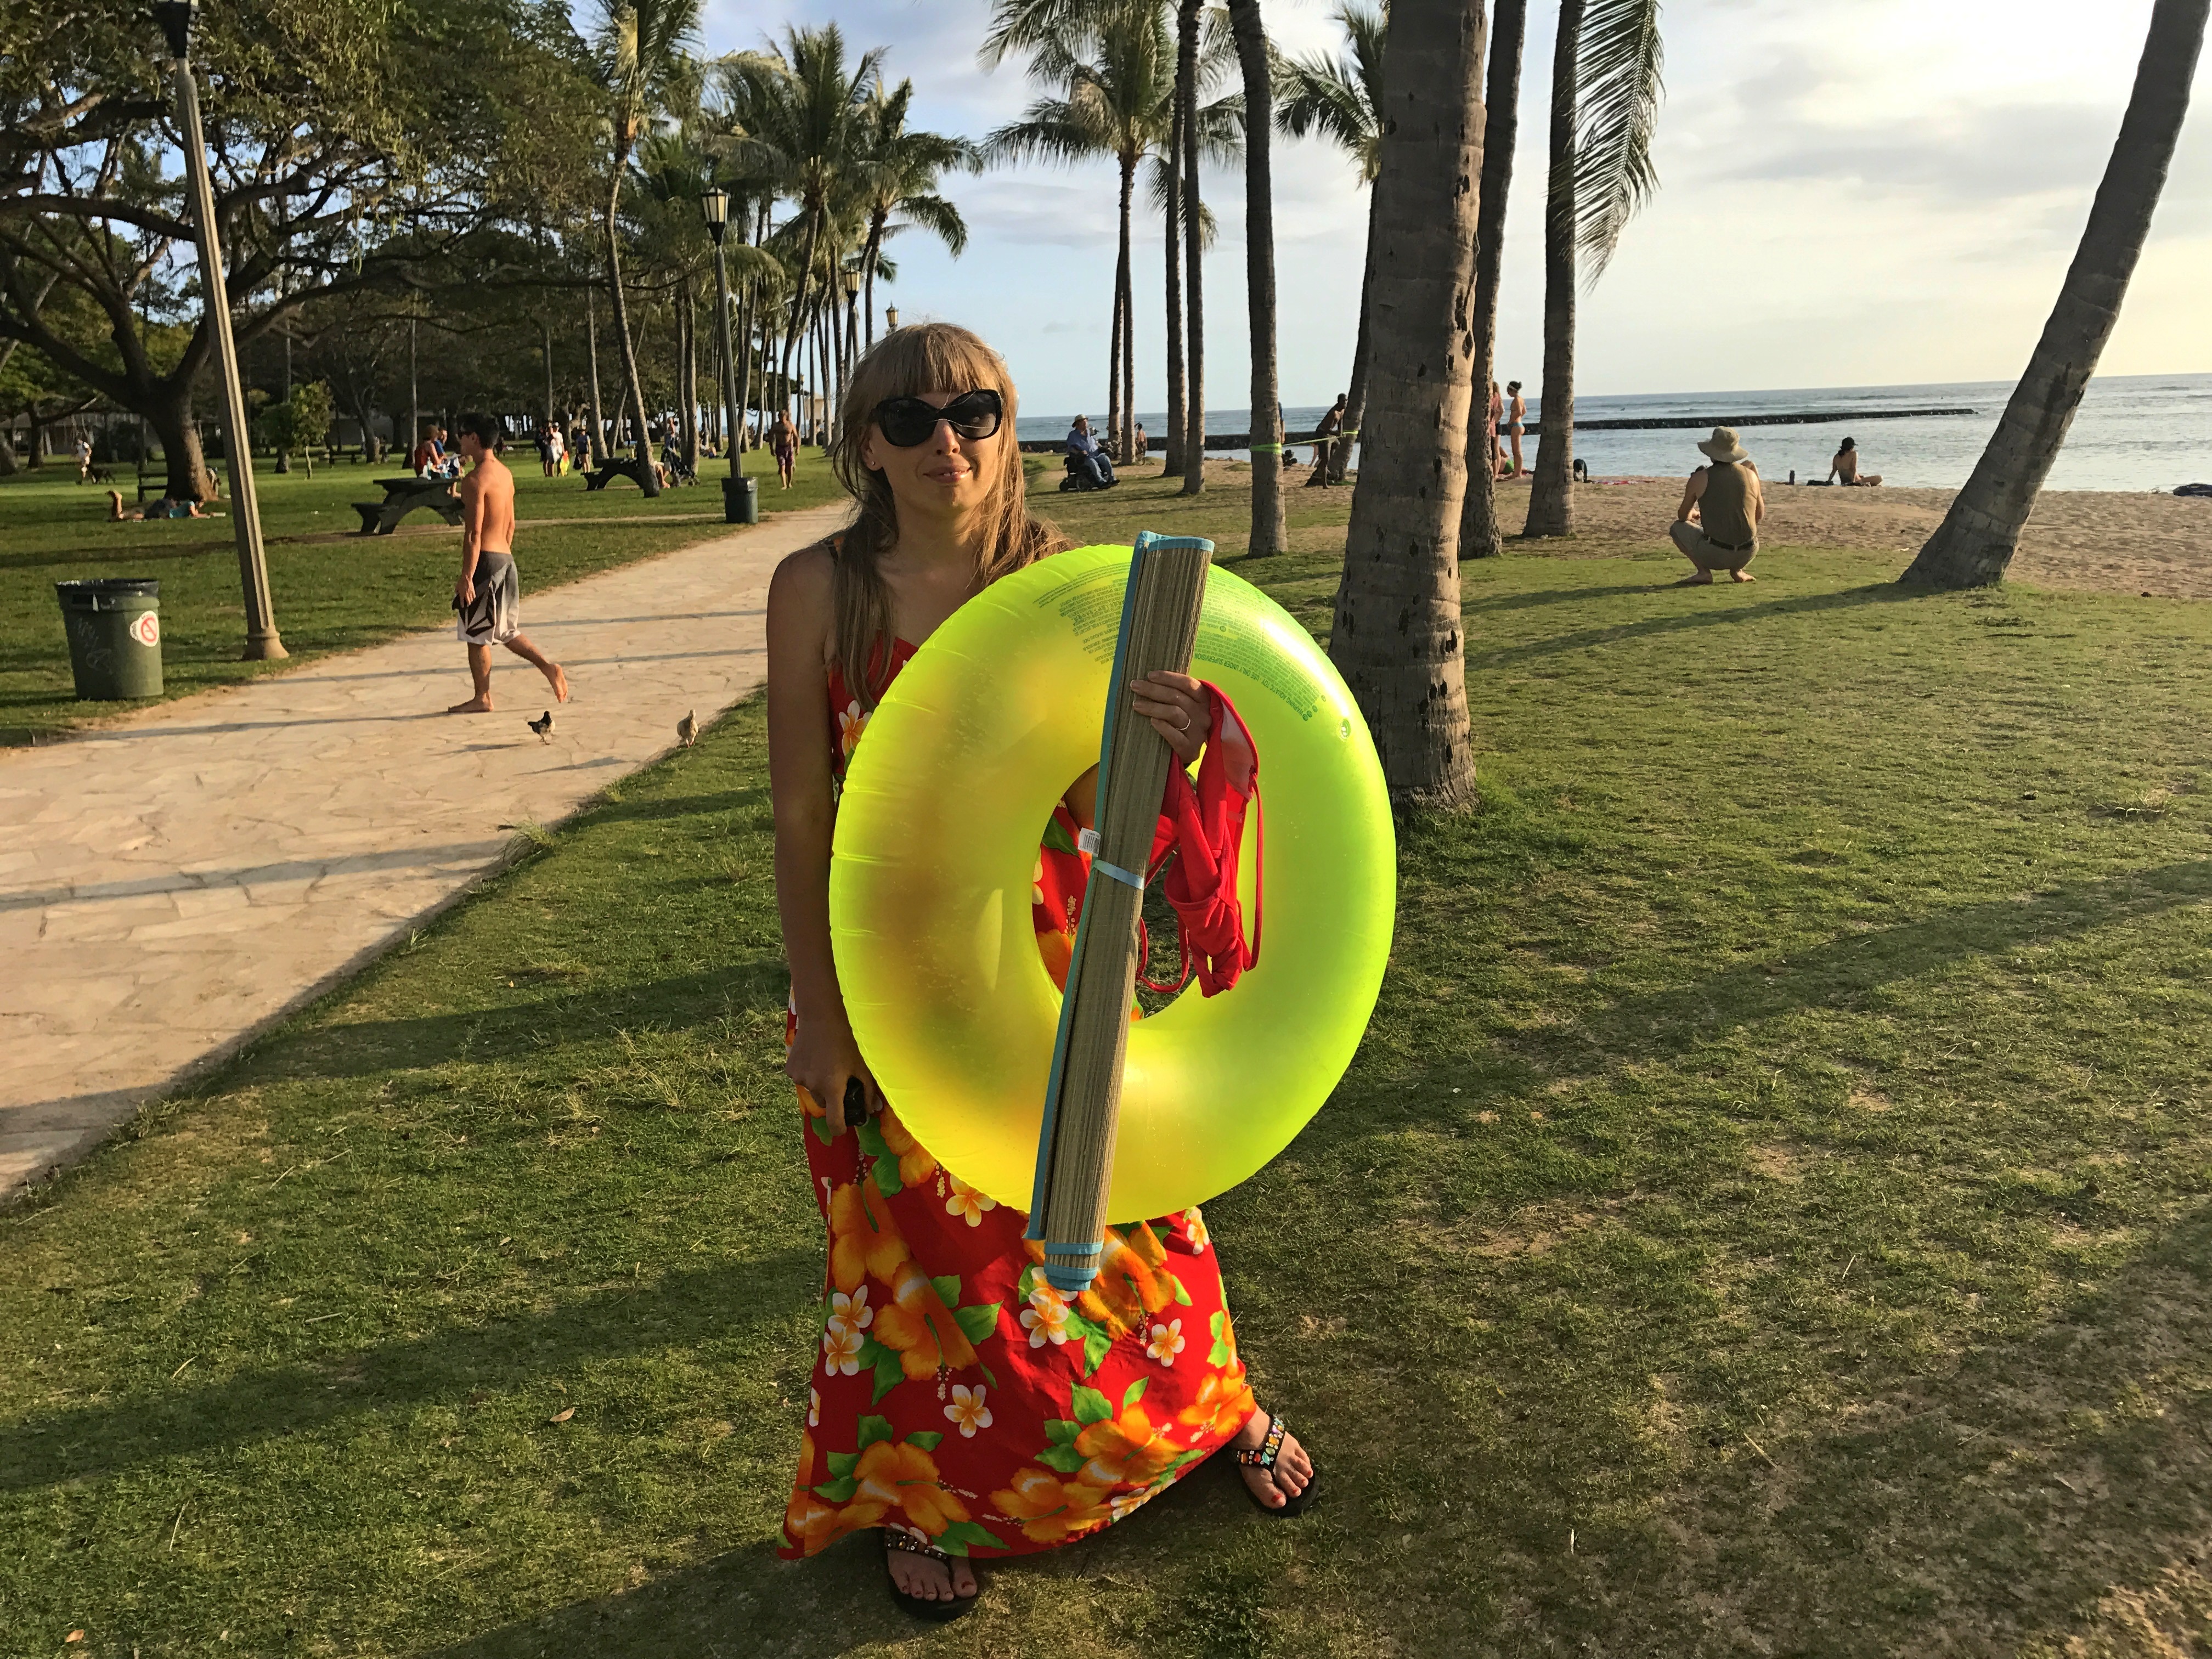 Гавайи: Best of Oahu